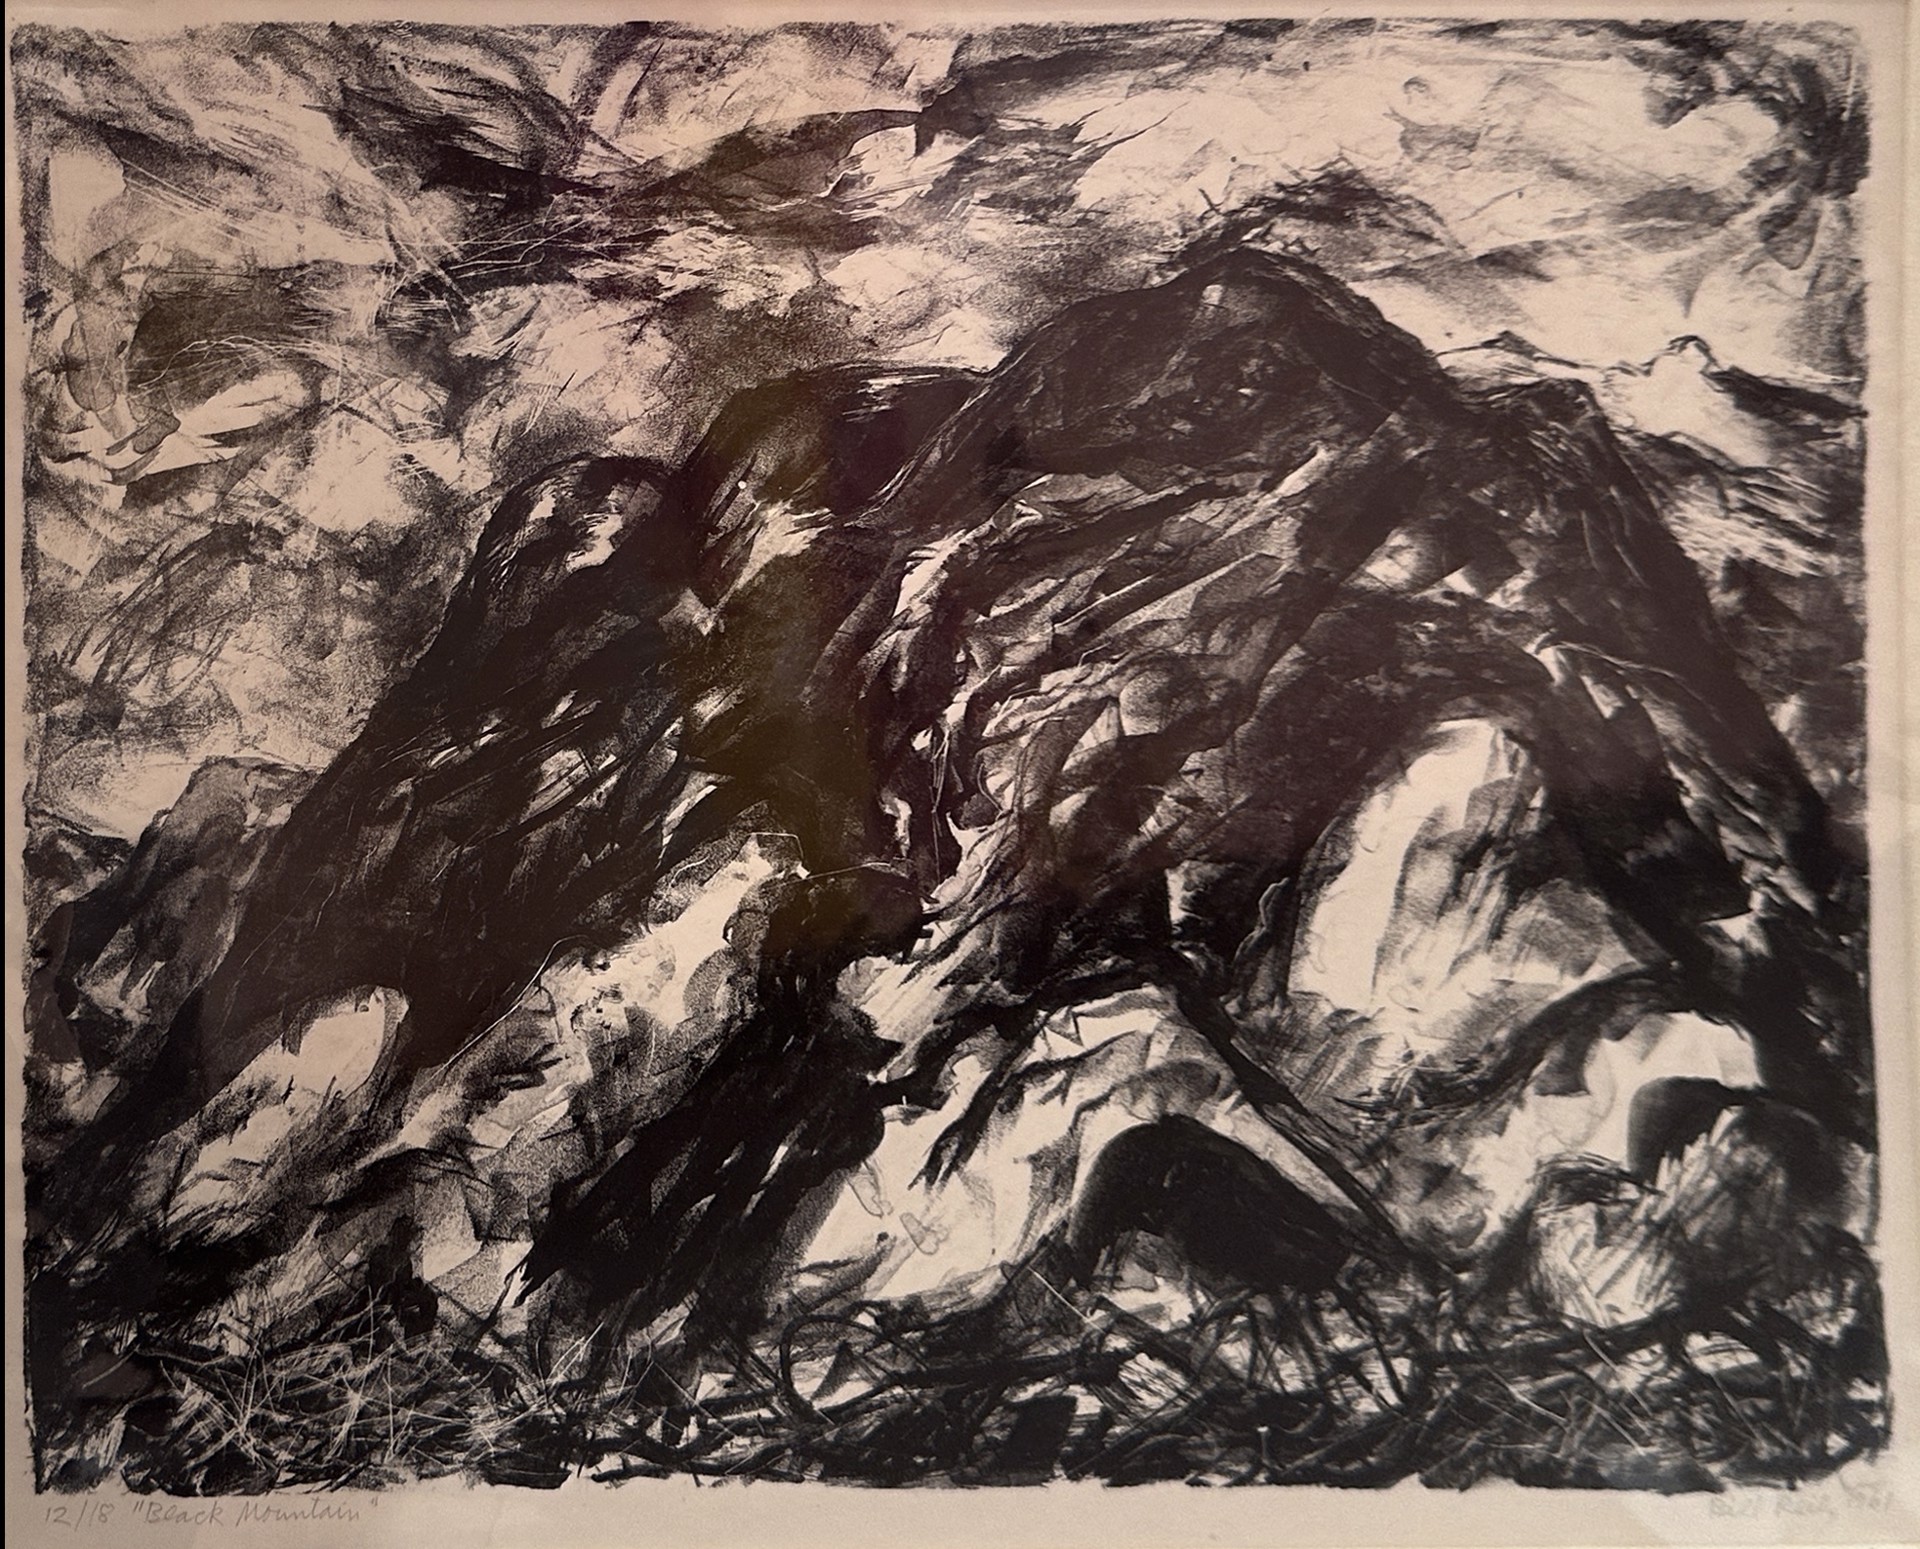 78. Black Mountain by Bill Reily Prints